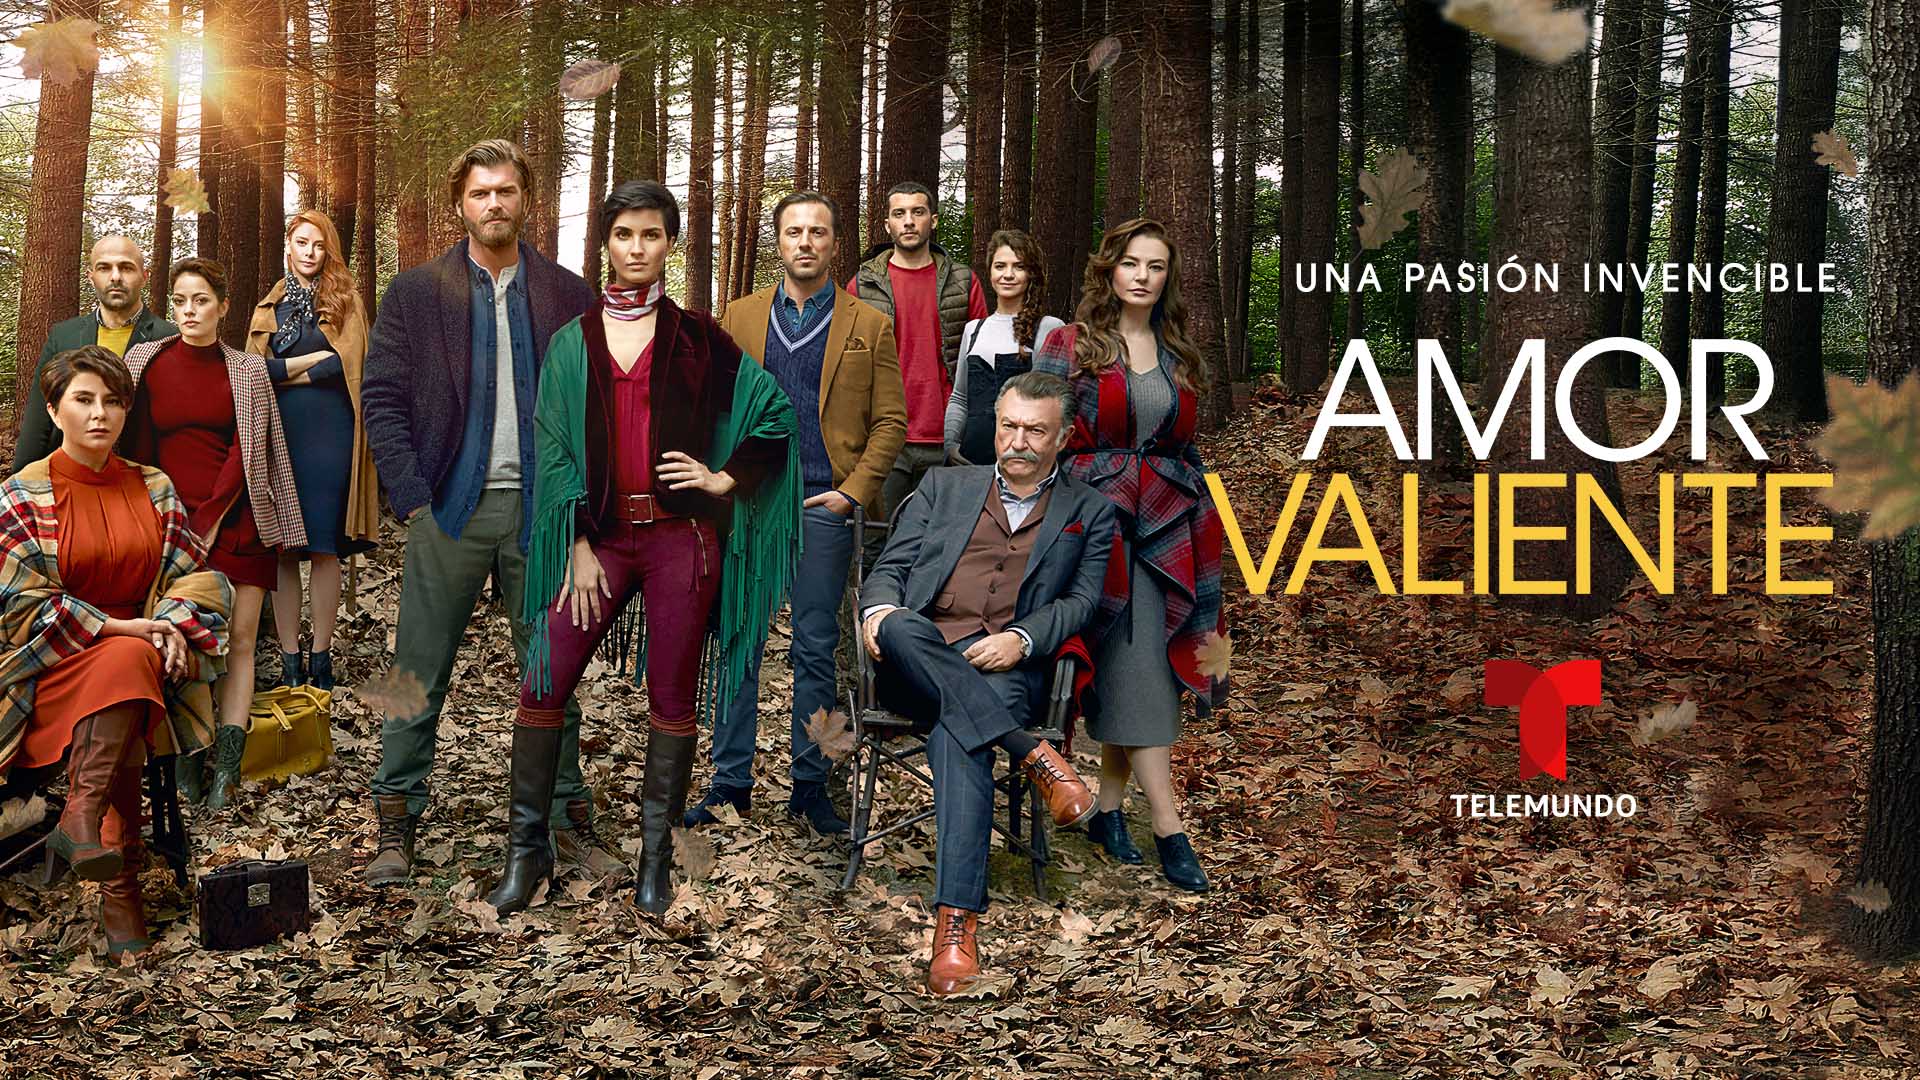 Telemundo anuncia nueva fecha de estreno para la serie “Amor valiente”